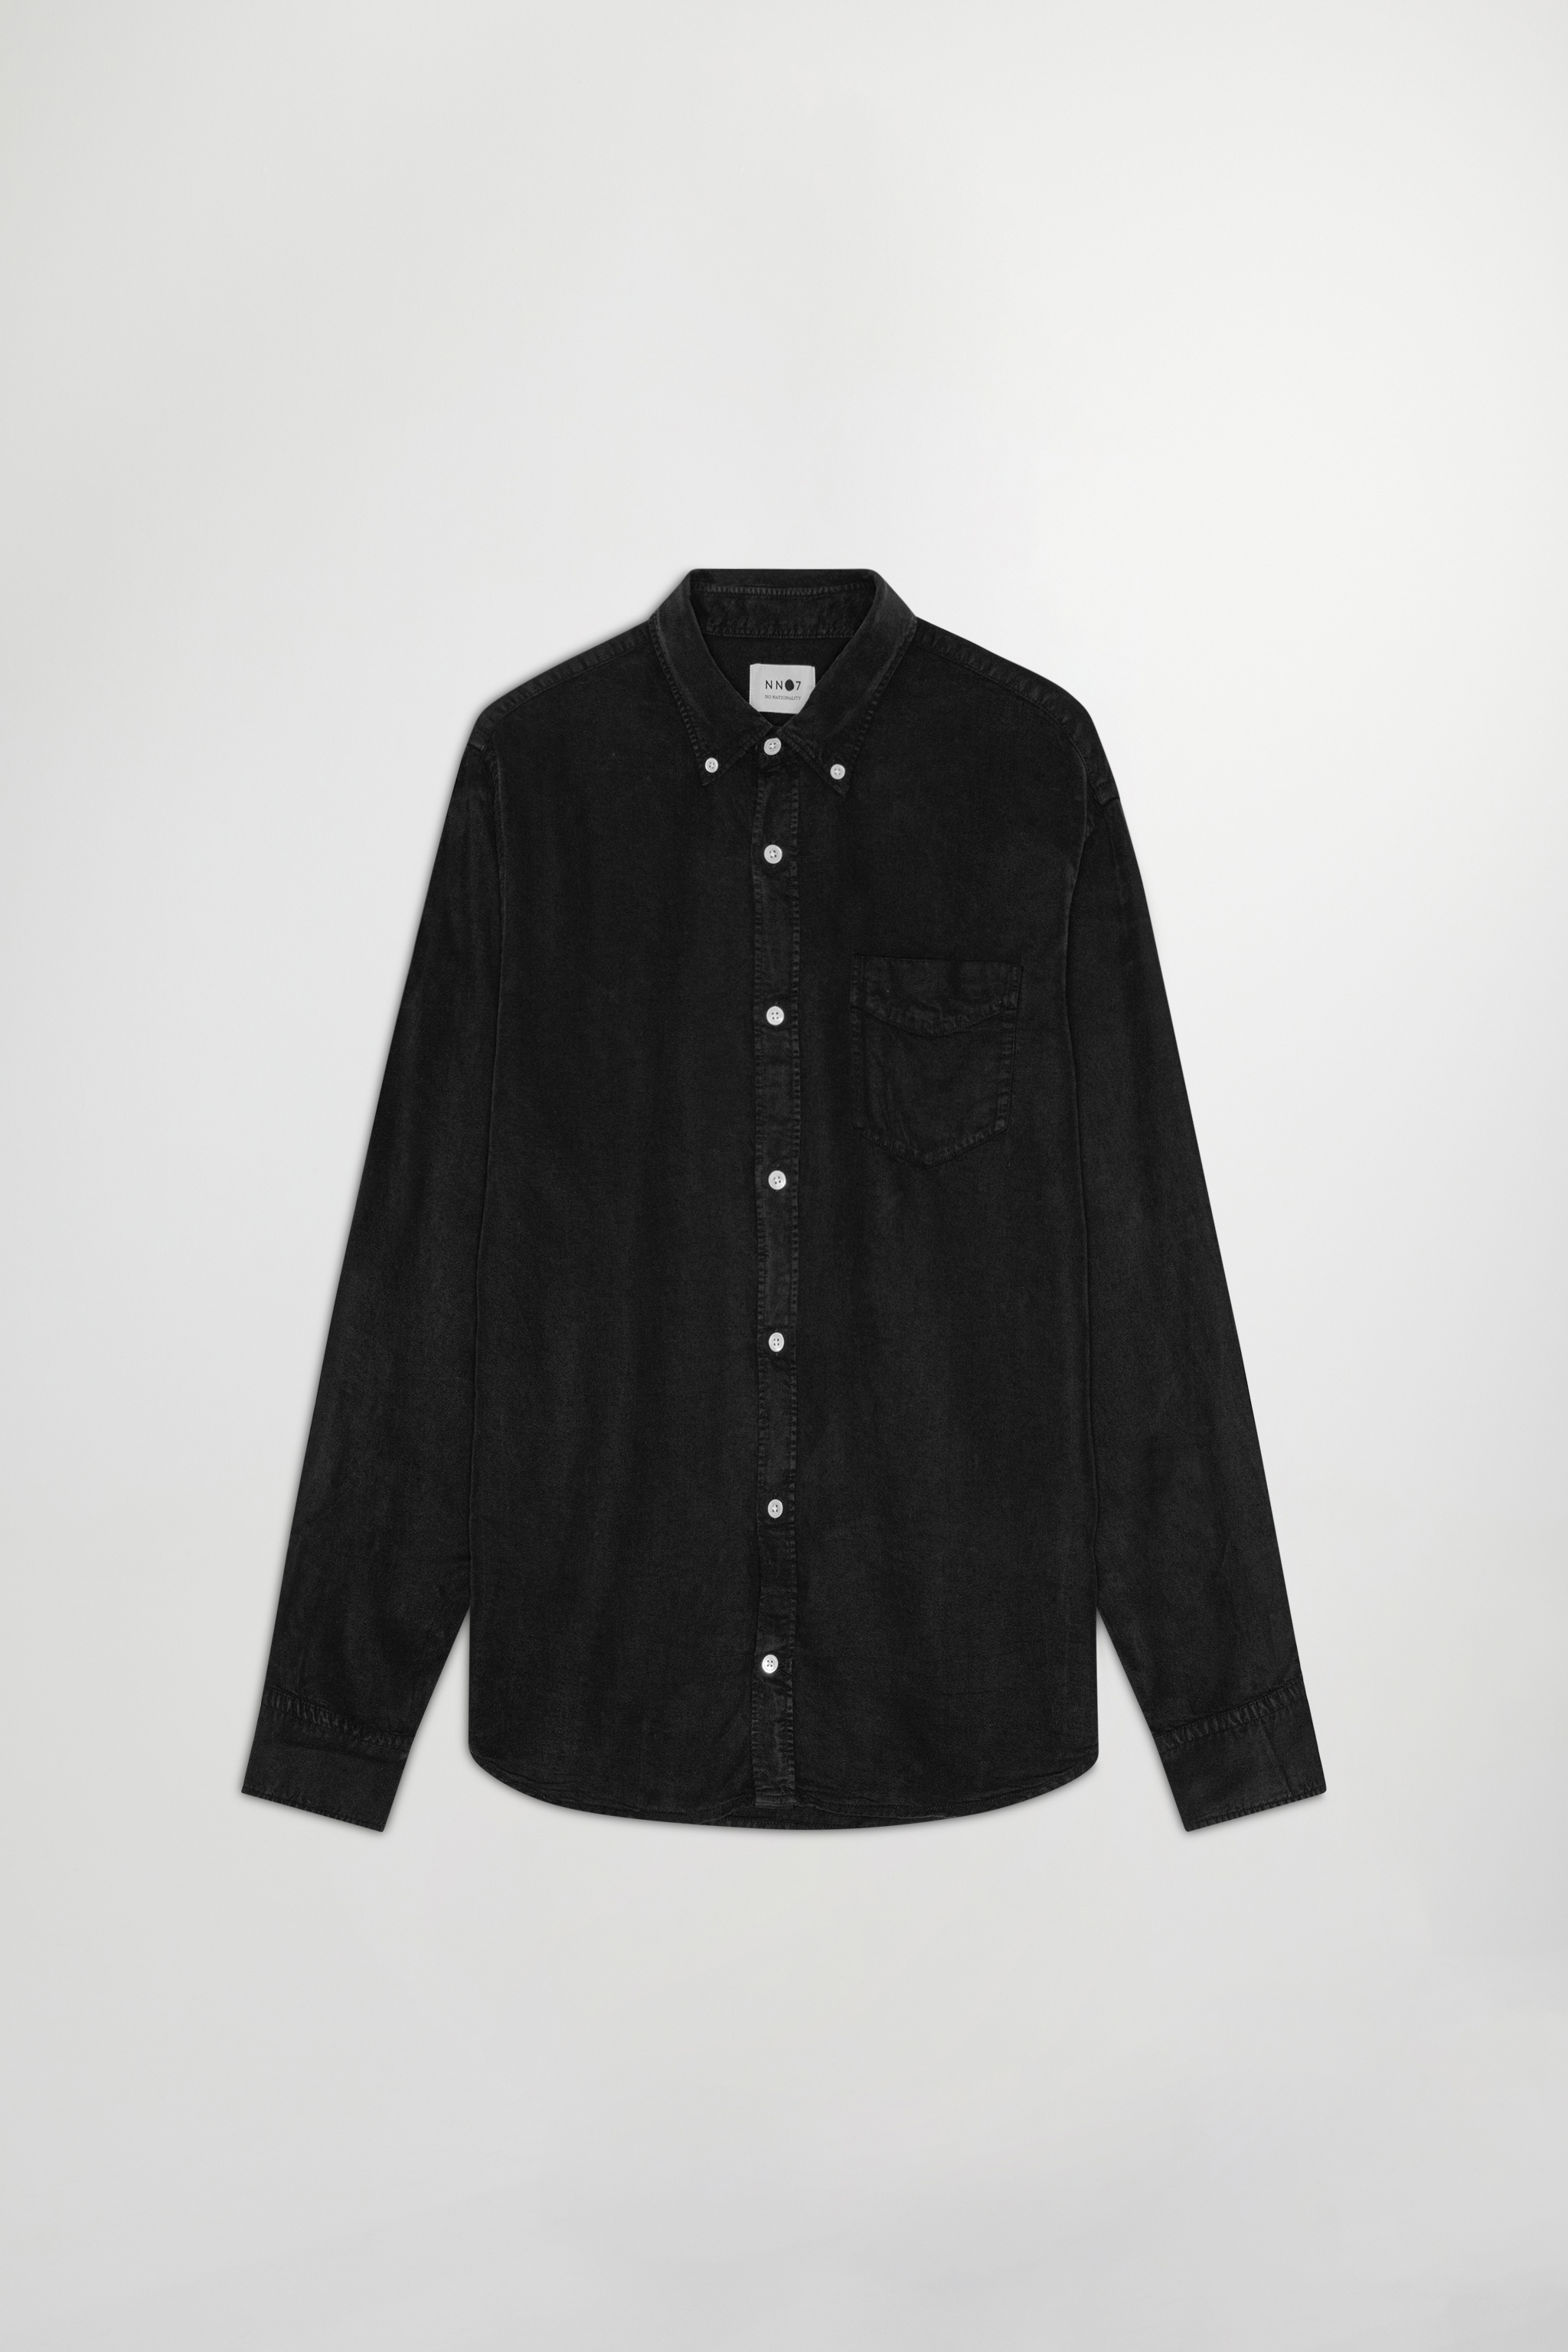 NWT Supreme Men's Monogram Woven Denim Button Down Shirt Black FW21 DS  AUTHENTIC 